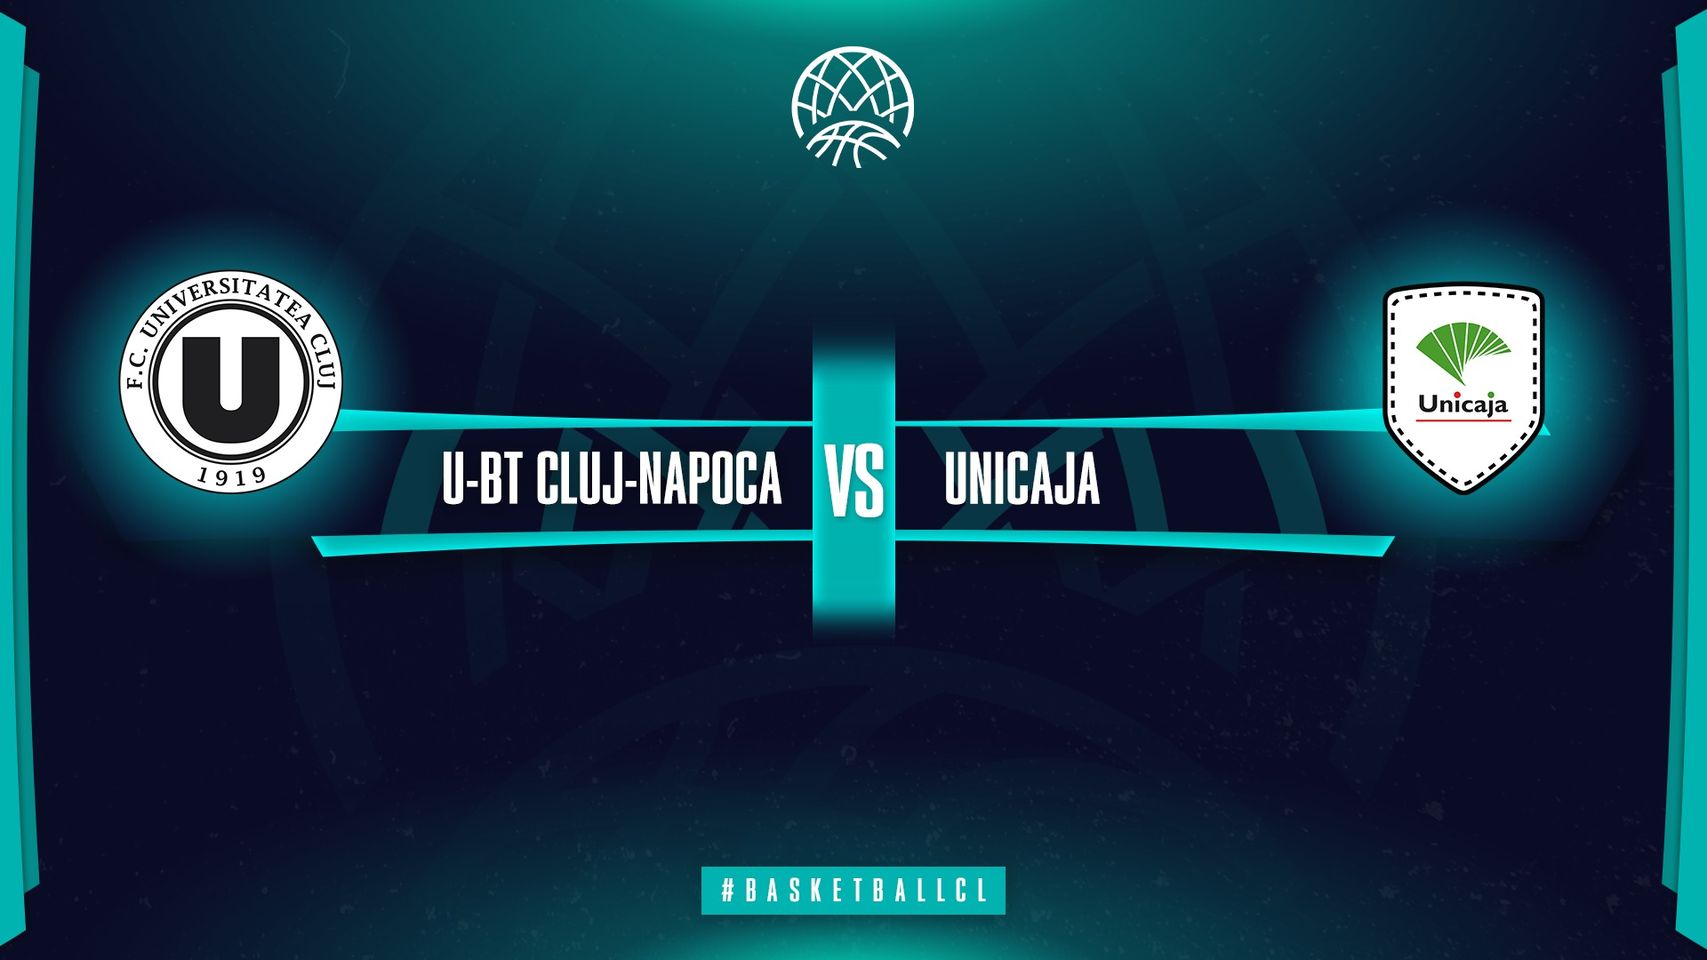 U-BT Cluj-Napoca v Unicaja